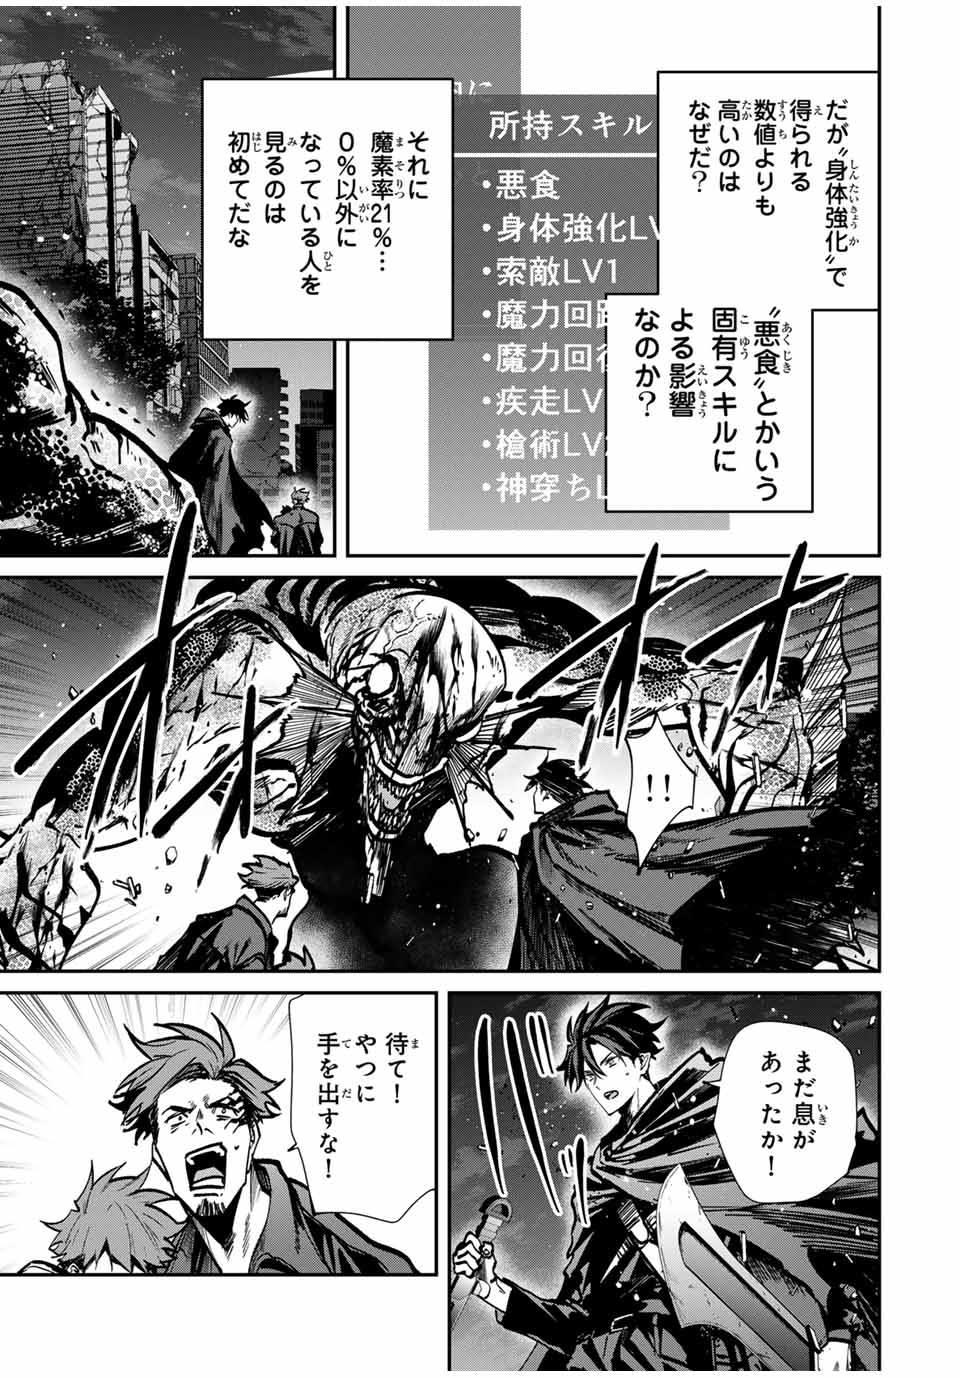 Kono Sekai ga Izure Horobu Koto wo, Ore dake ga Shitte Iru - Chapter 73 - Page 3